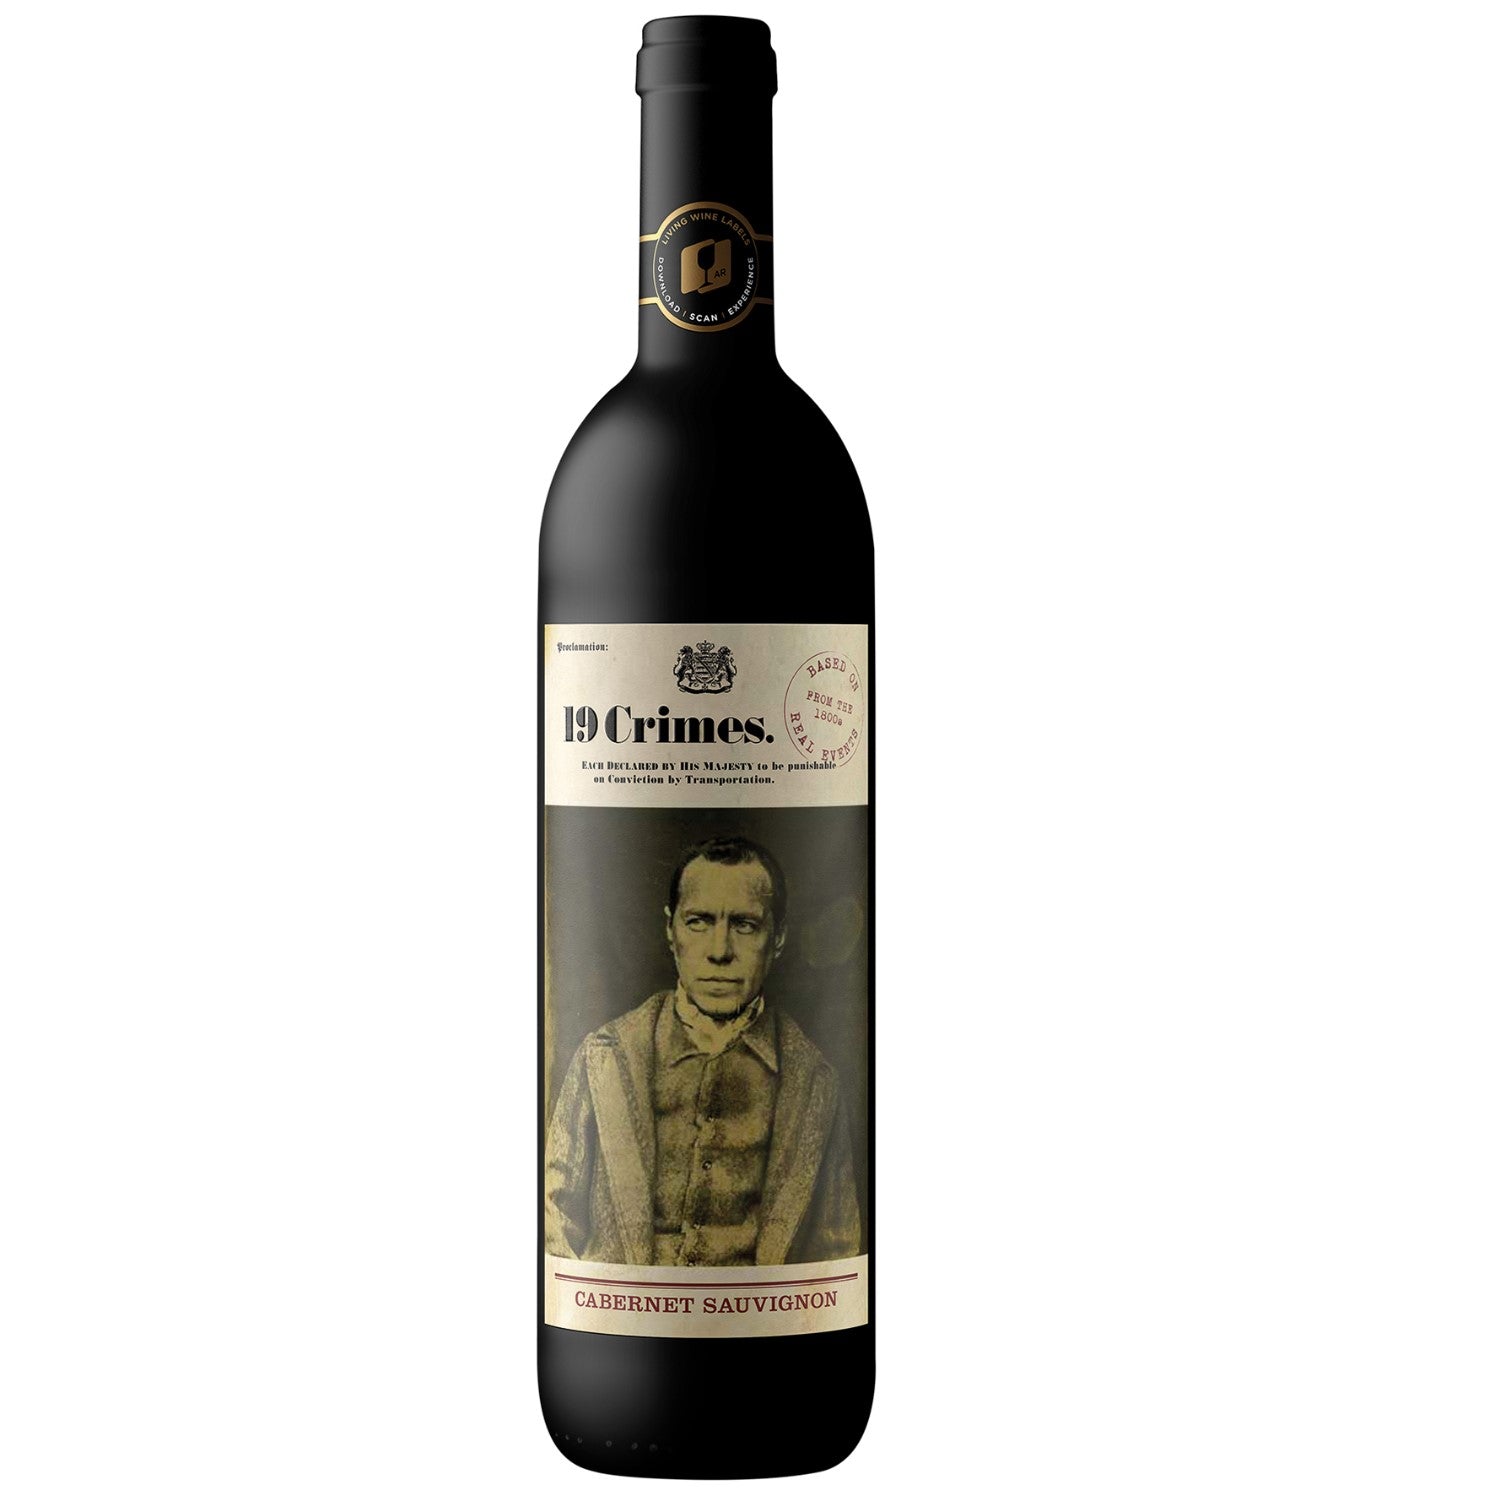 19 Crimes Cabernet Sauvignon Rotwein Wein Trocken Australien (12 x 0.75l) - Versanel - Wein